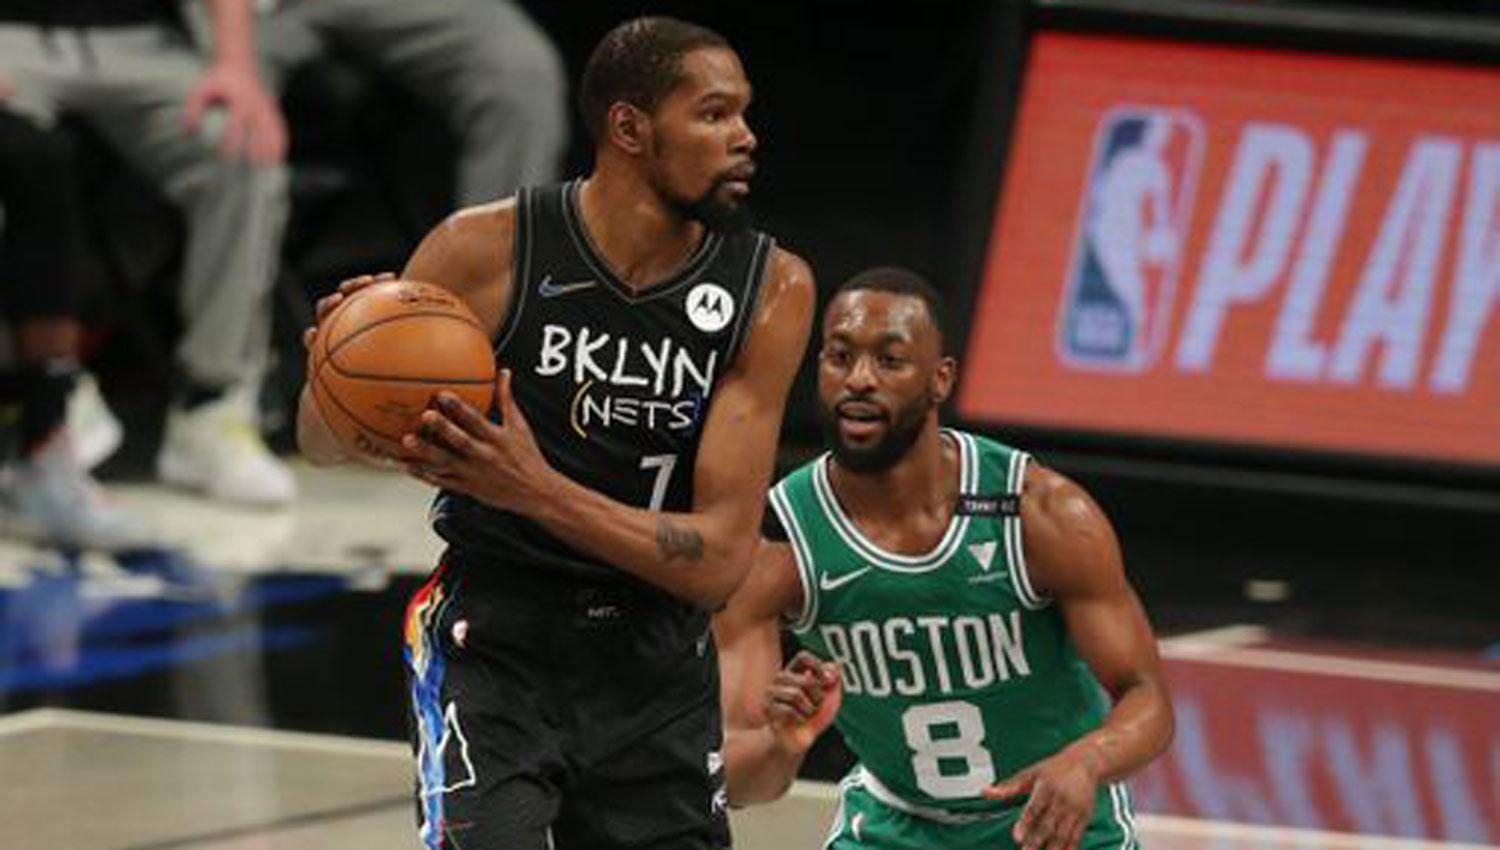 LÍDER. Kevin Durant fue determinante en la victoria de Nets sobre Celtics, que quedaron 0-2 abajo.